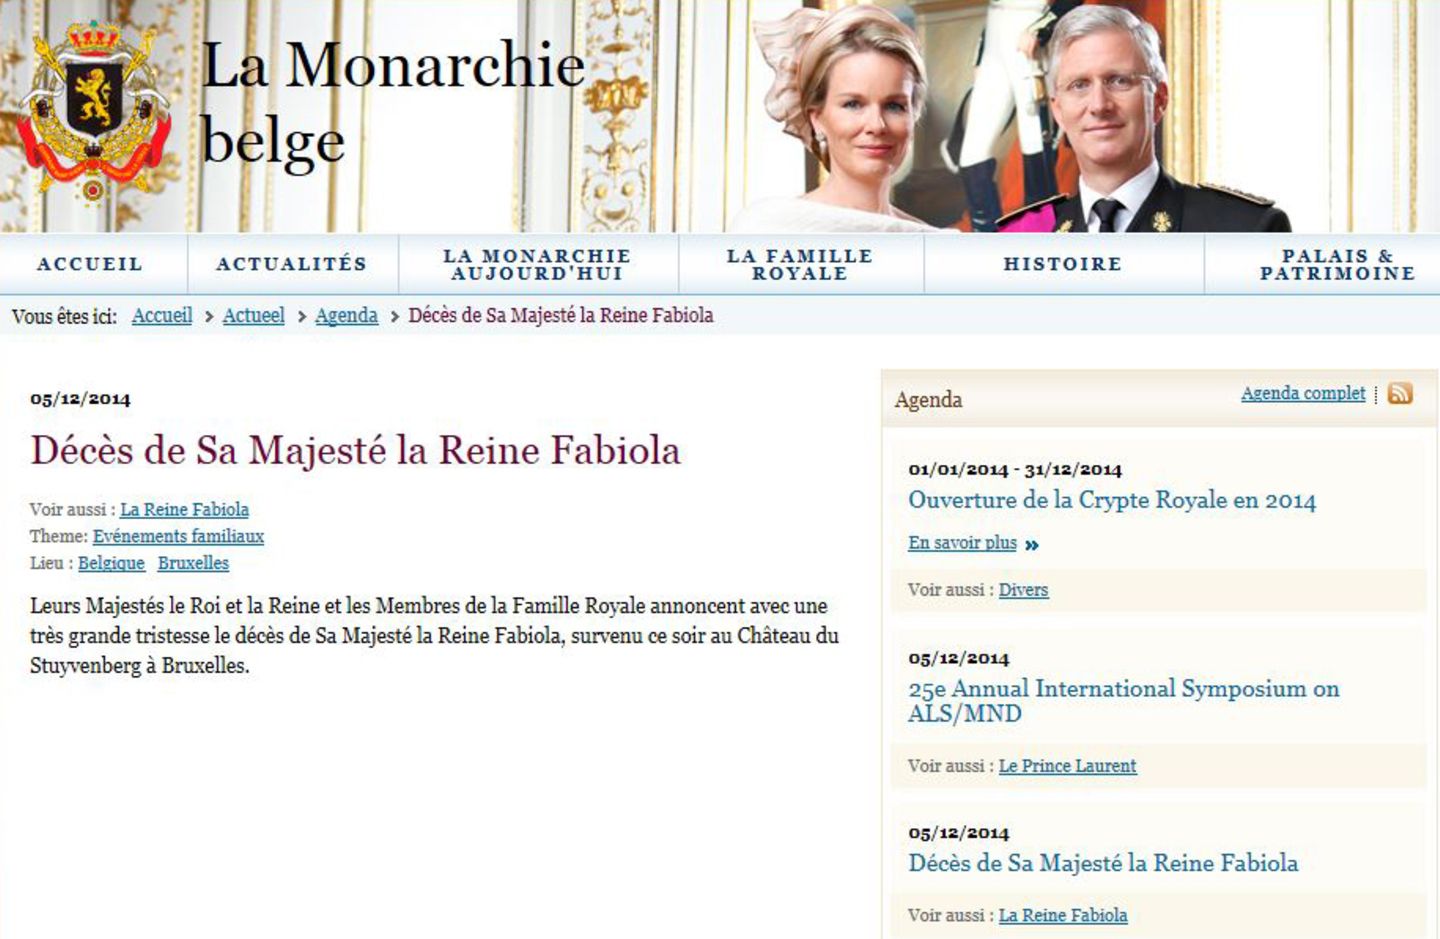 5. Dezember 2014: Auf der offiziellen Webseite des Königshauses wird der Tod von Königin Fabiola bekannt gegeben. "Ihre Majestäten der König und die Königin und die Mitglieder der königlichen Familie geben mit großer Trauer den Tod von Königin Fabiola bekannt, die an diesem Abend auf Schloss Stuyvenberg in Brüssel gestorben ist." Sie wurde 86 Jahre alt.